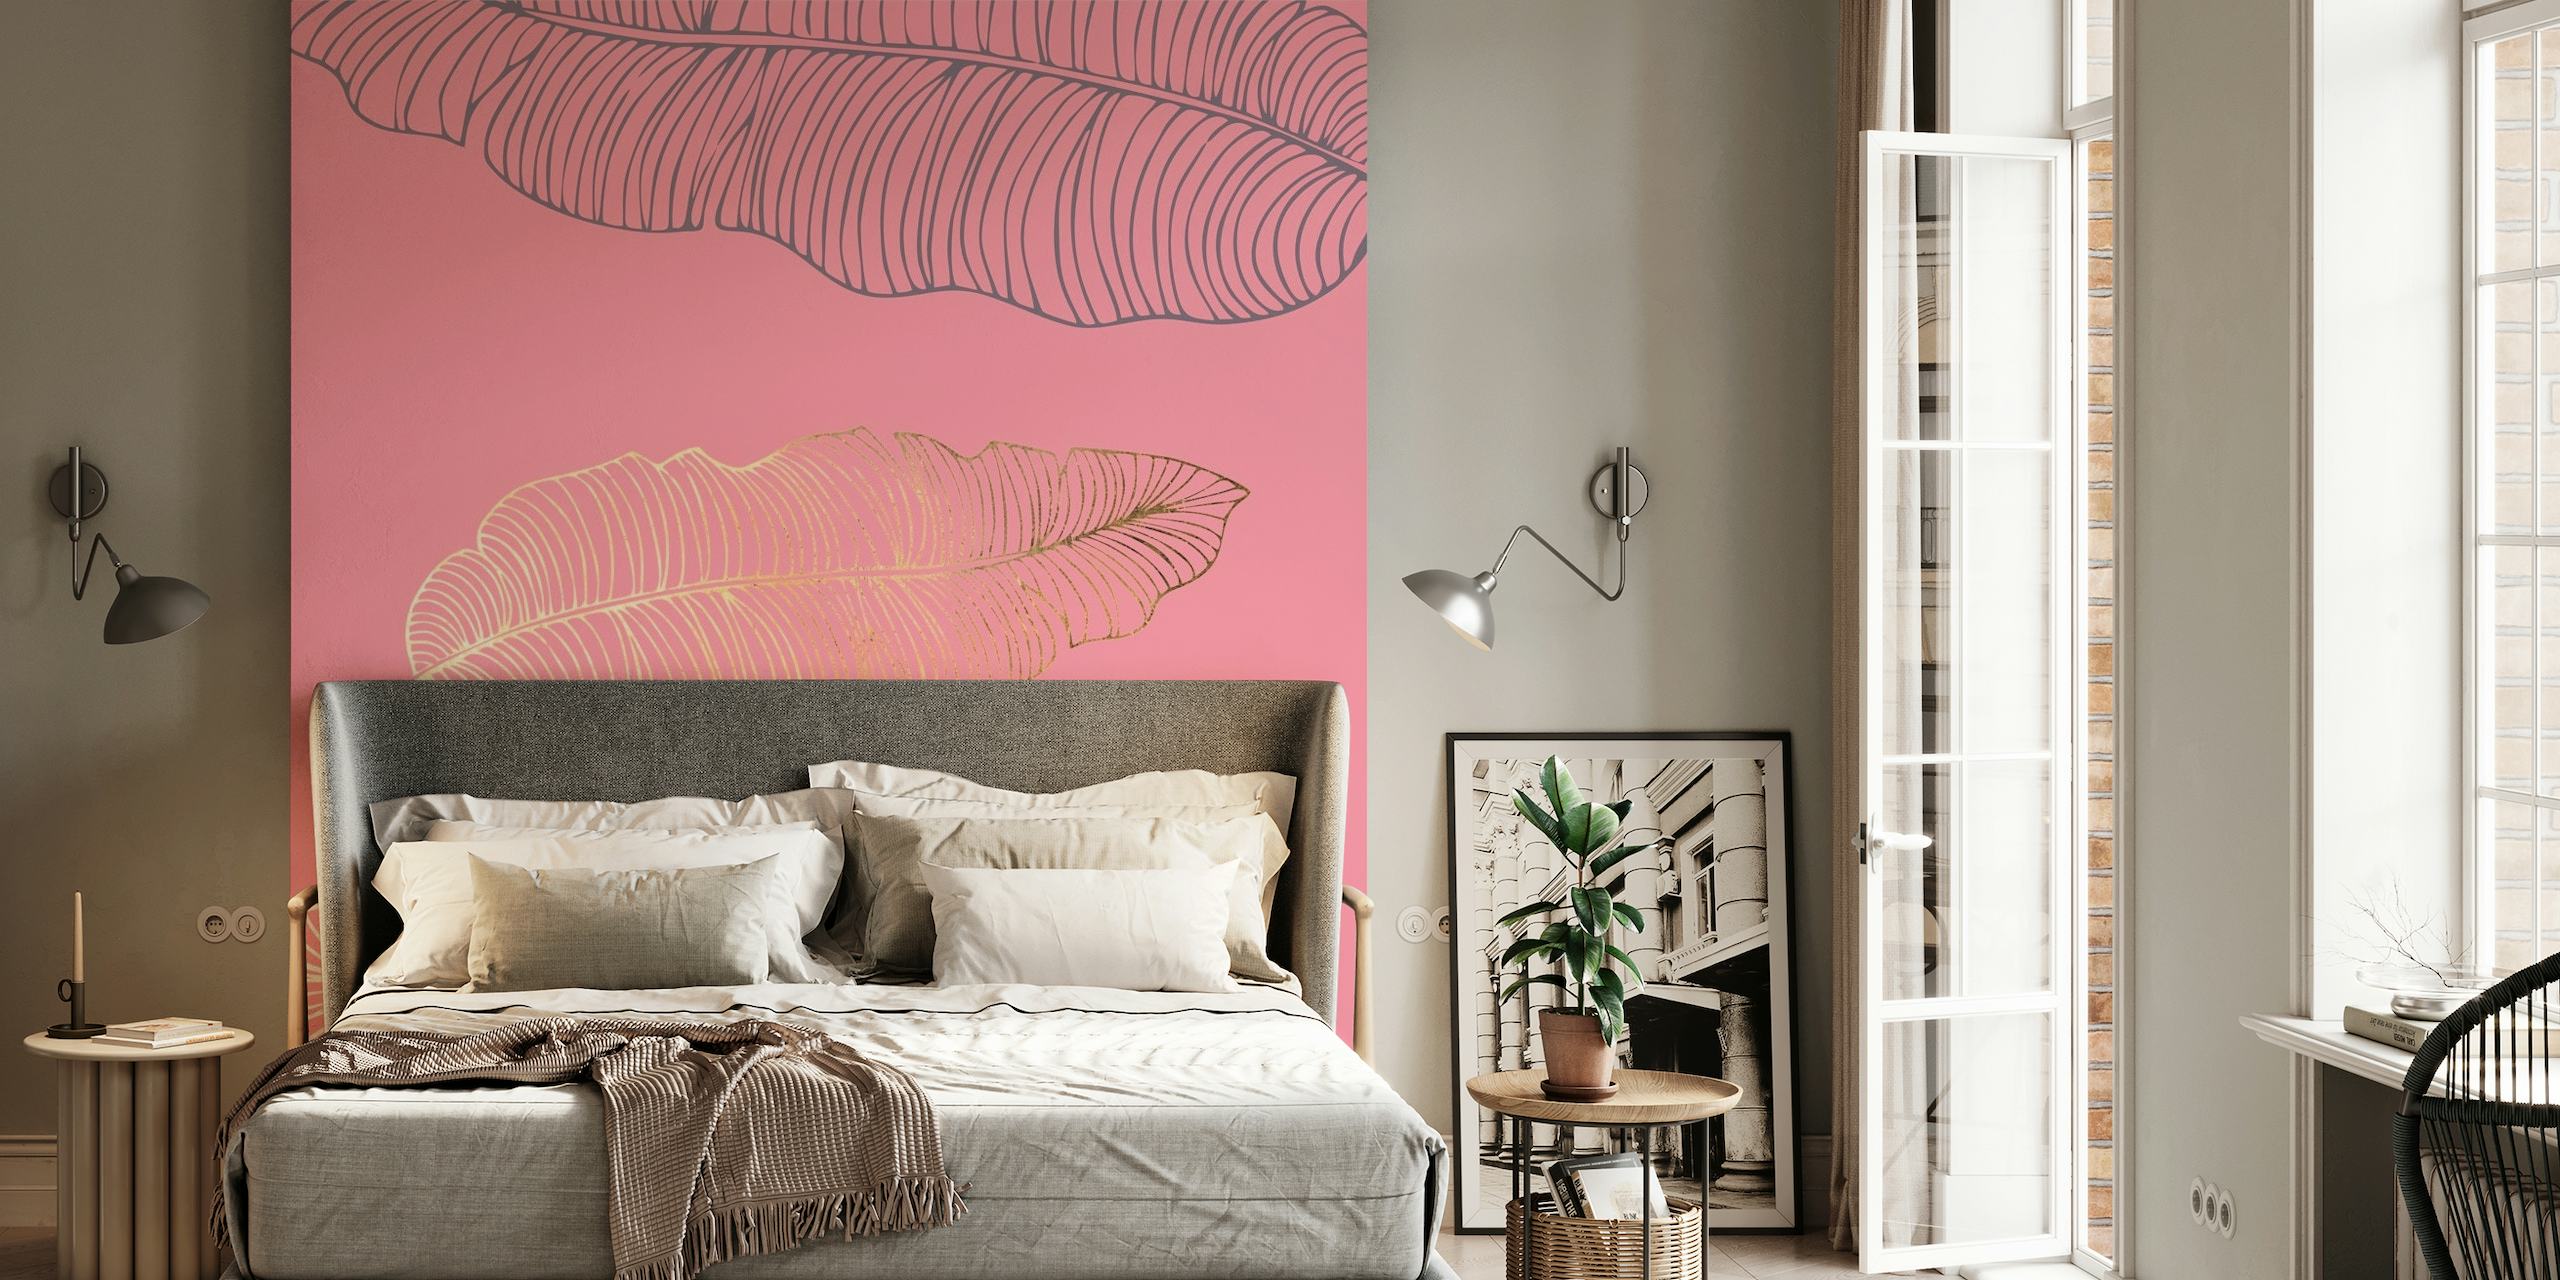 Design élégant de feuille de palmier rose sur un fond rose subtil pour une décoration murale